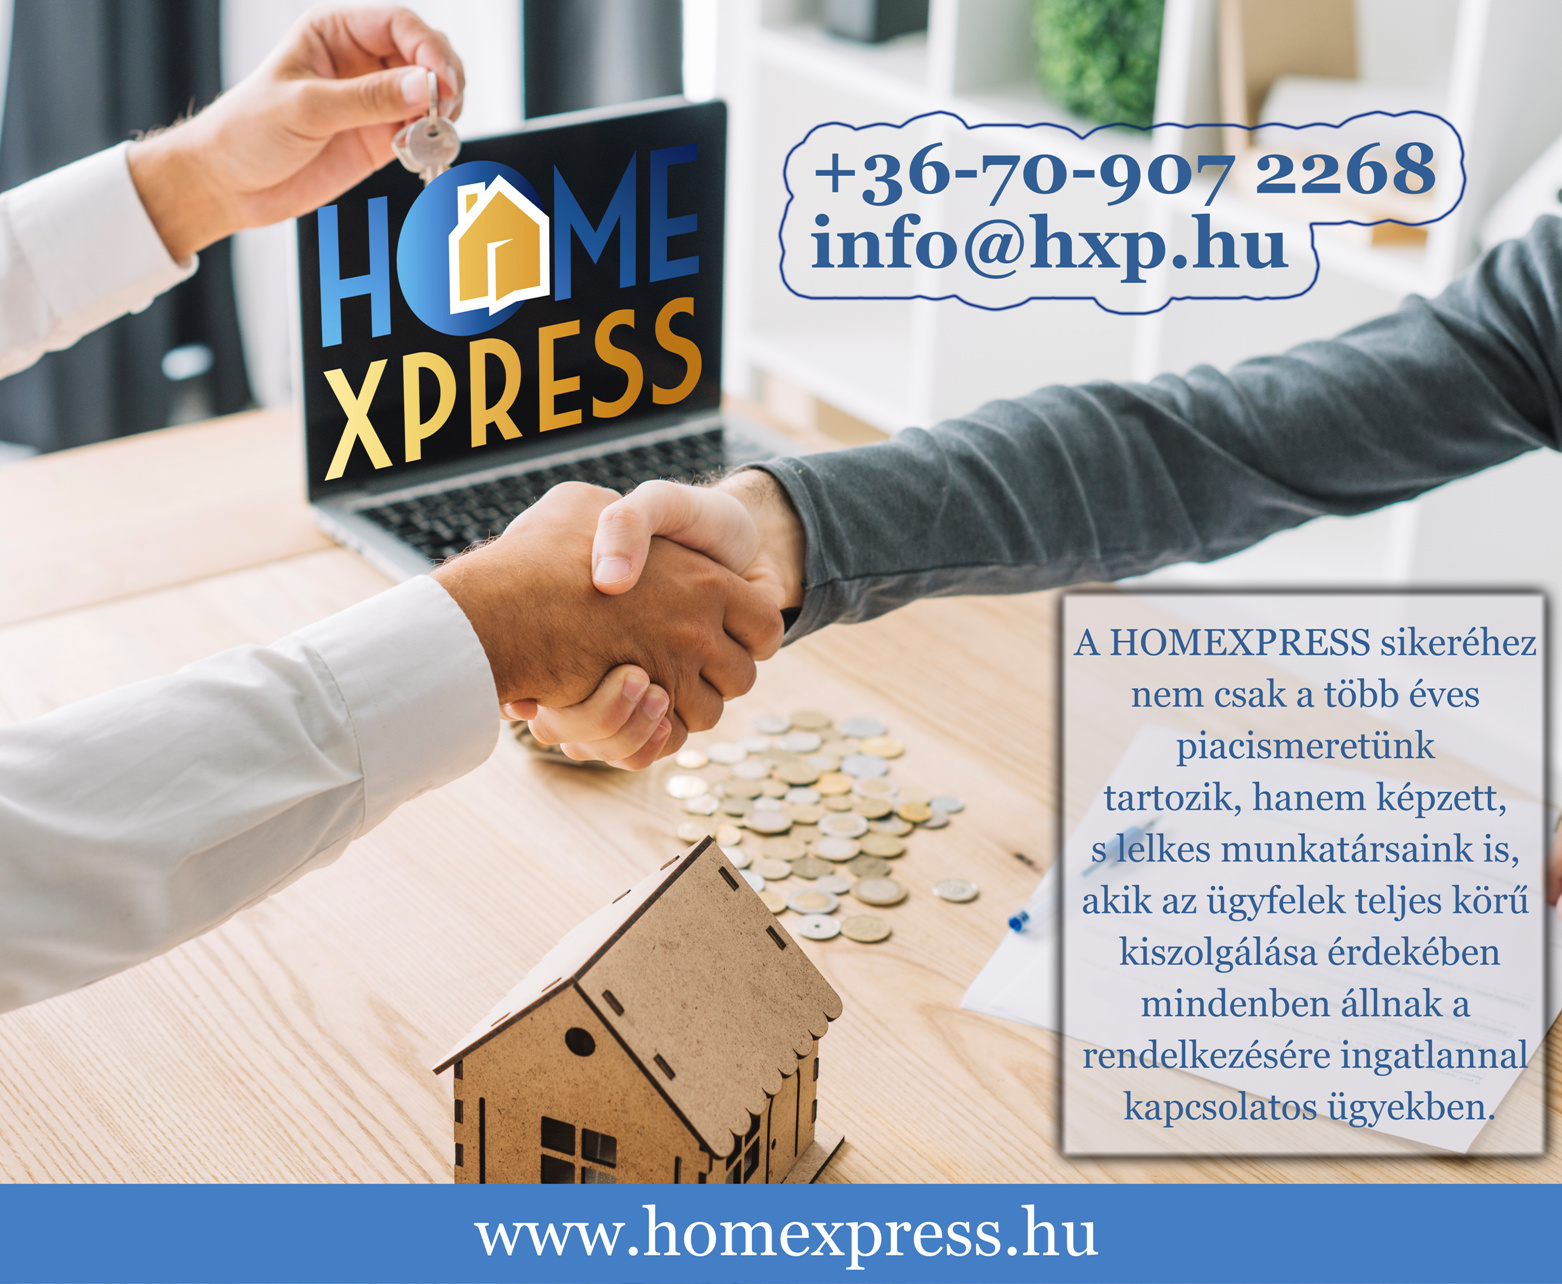 homexpress-siker-budapest-ingatlan.png